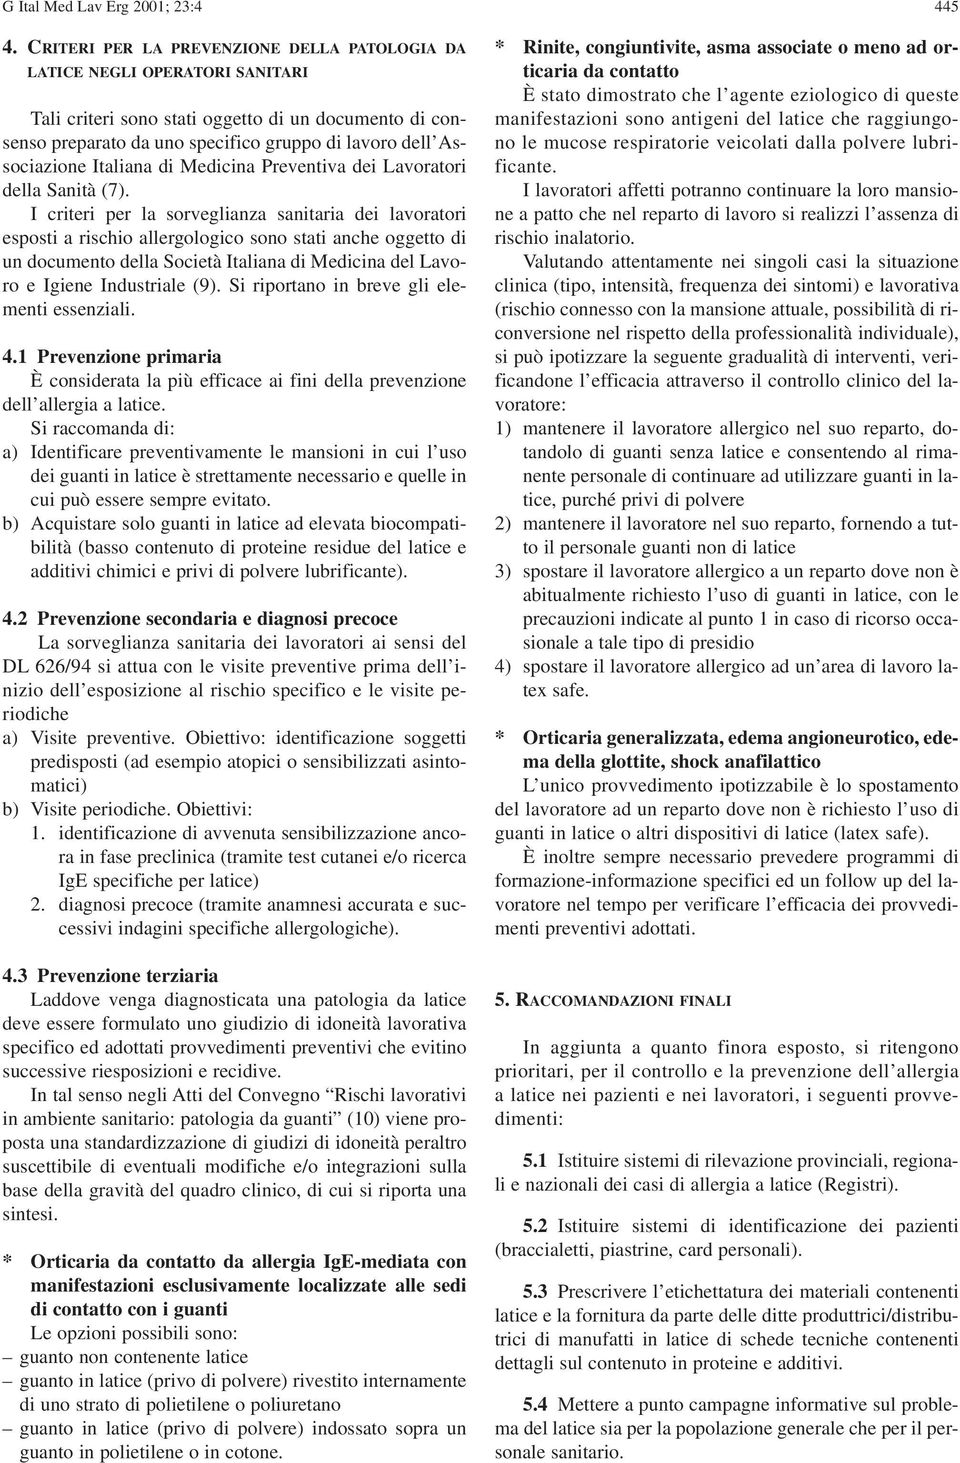 Italiana di Medicina Preventiva dei Lavoratori della Sanità (7).